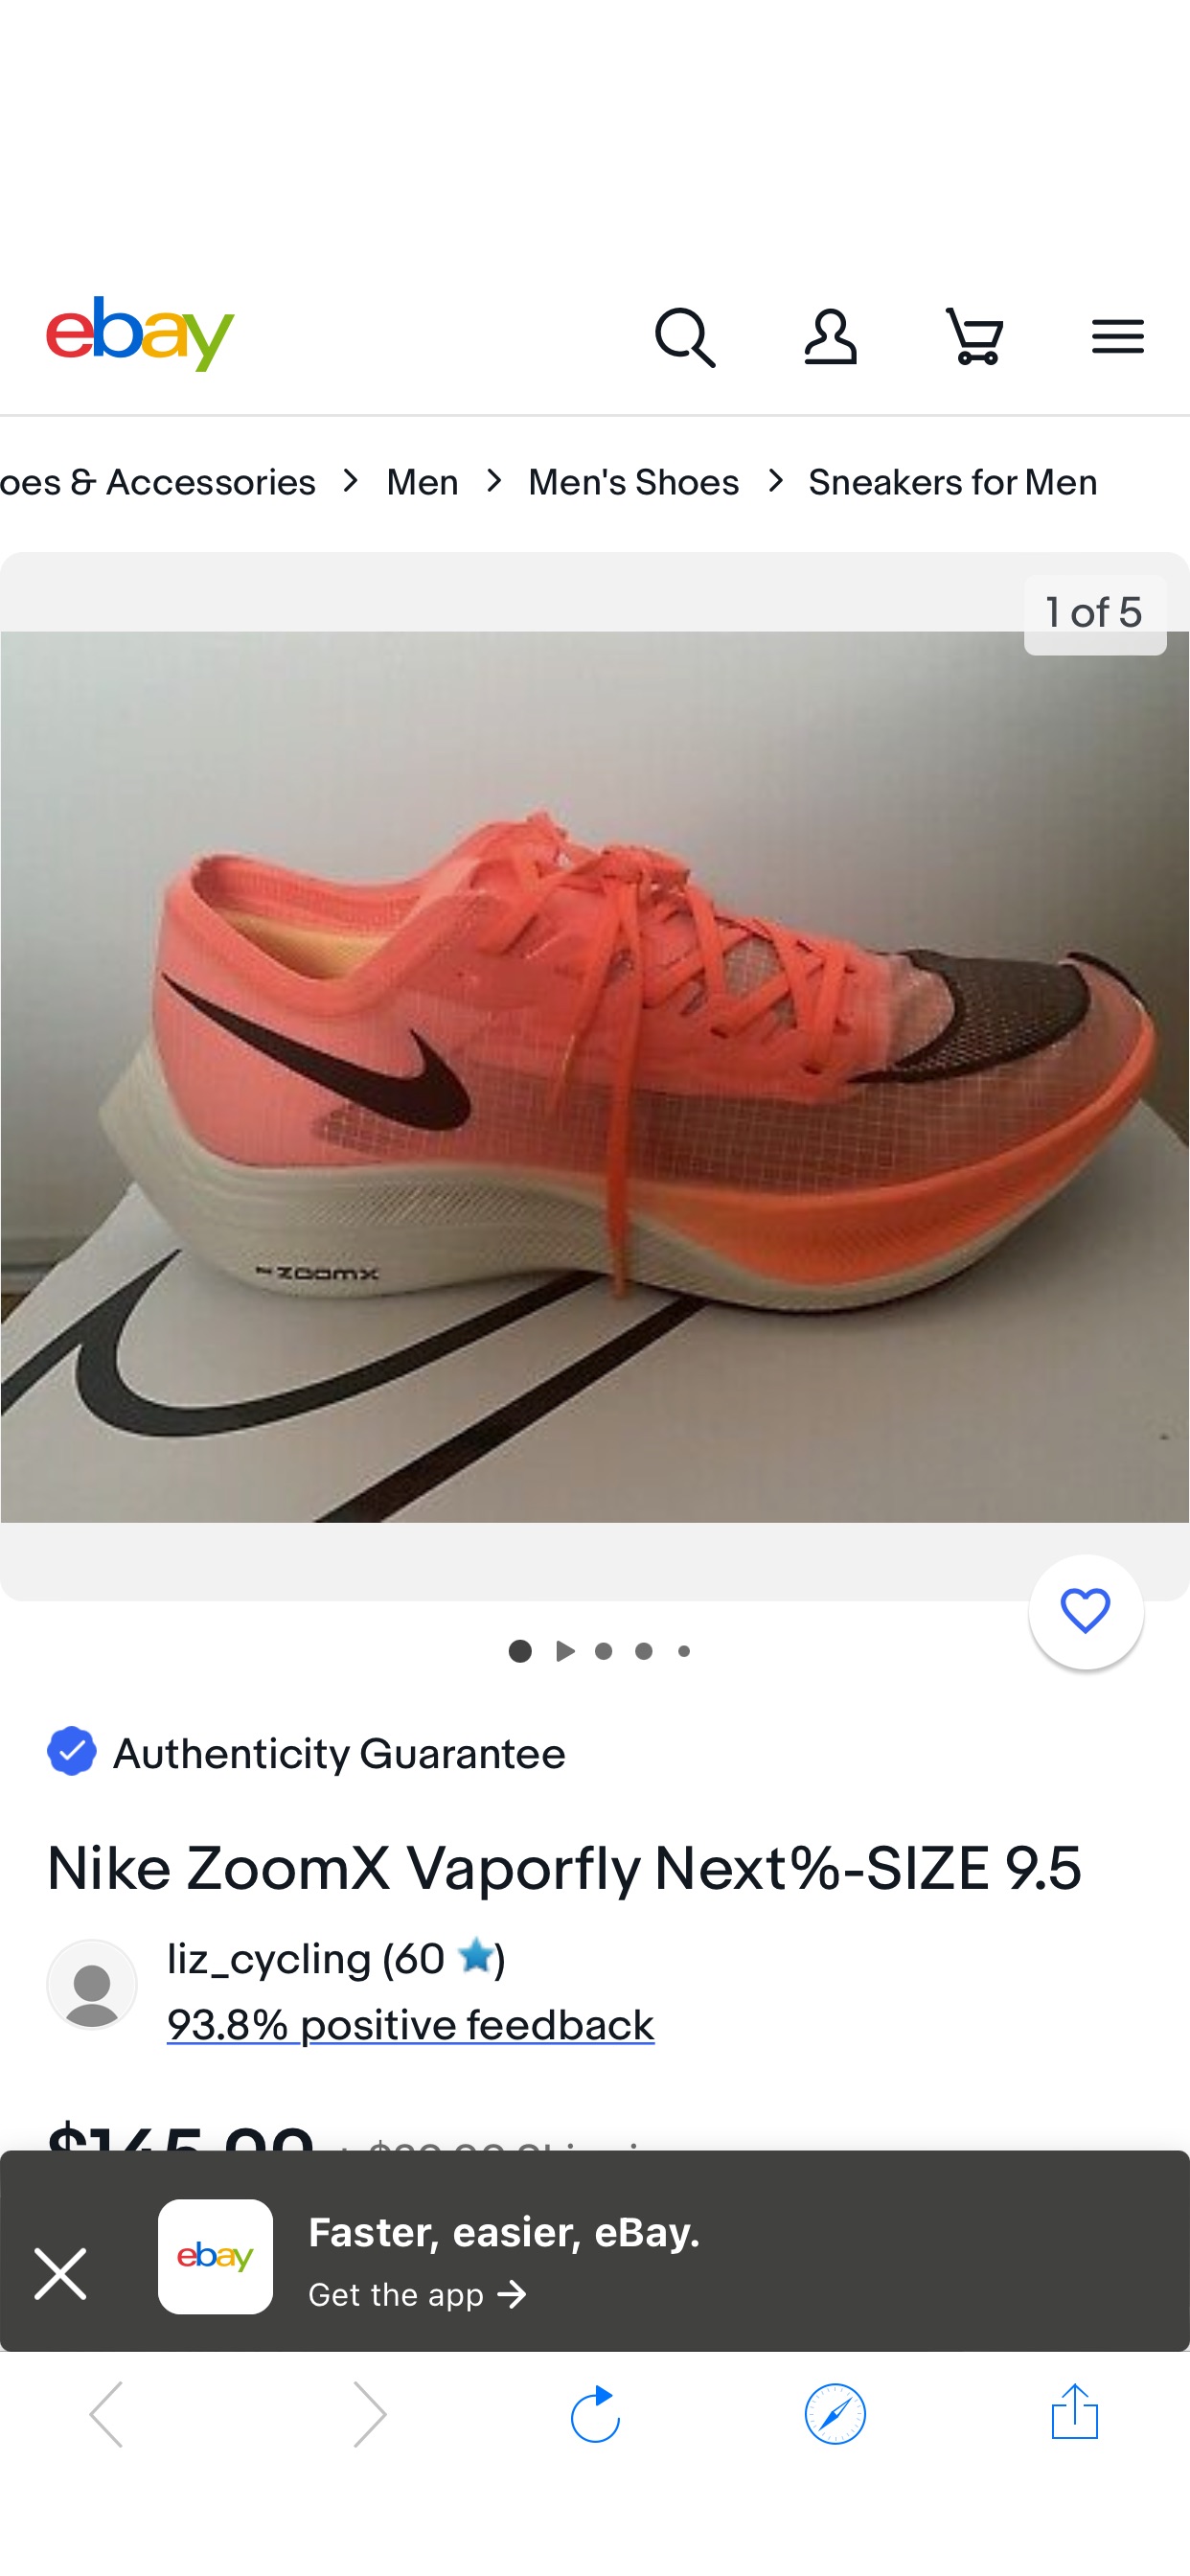 Nike ZoomX Vaporfly Next%-SIZE 9.5 | eBay